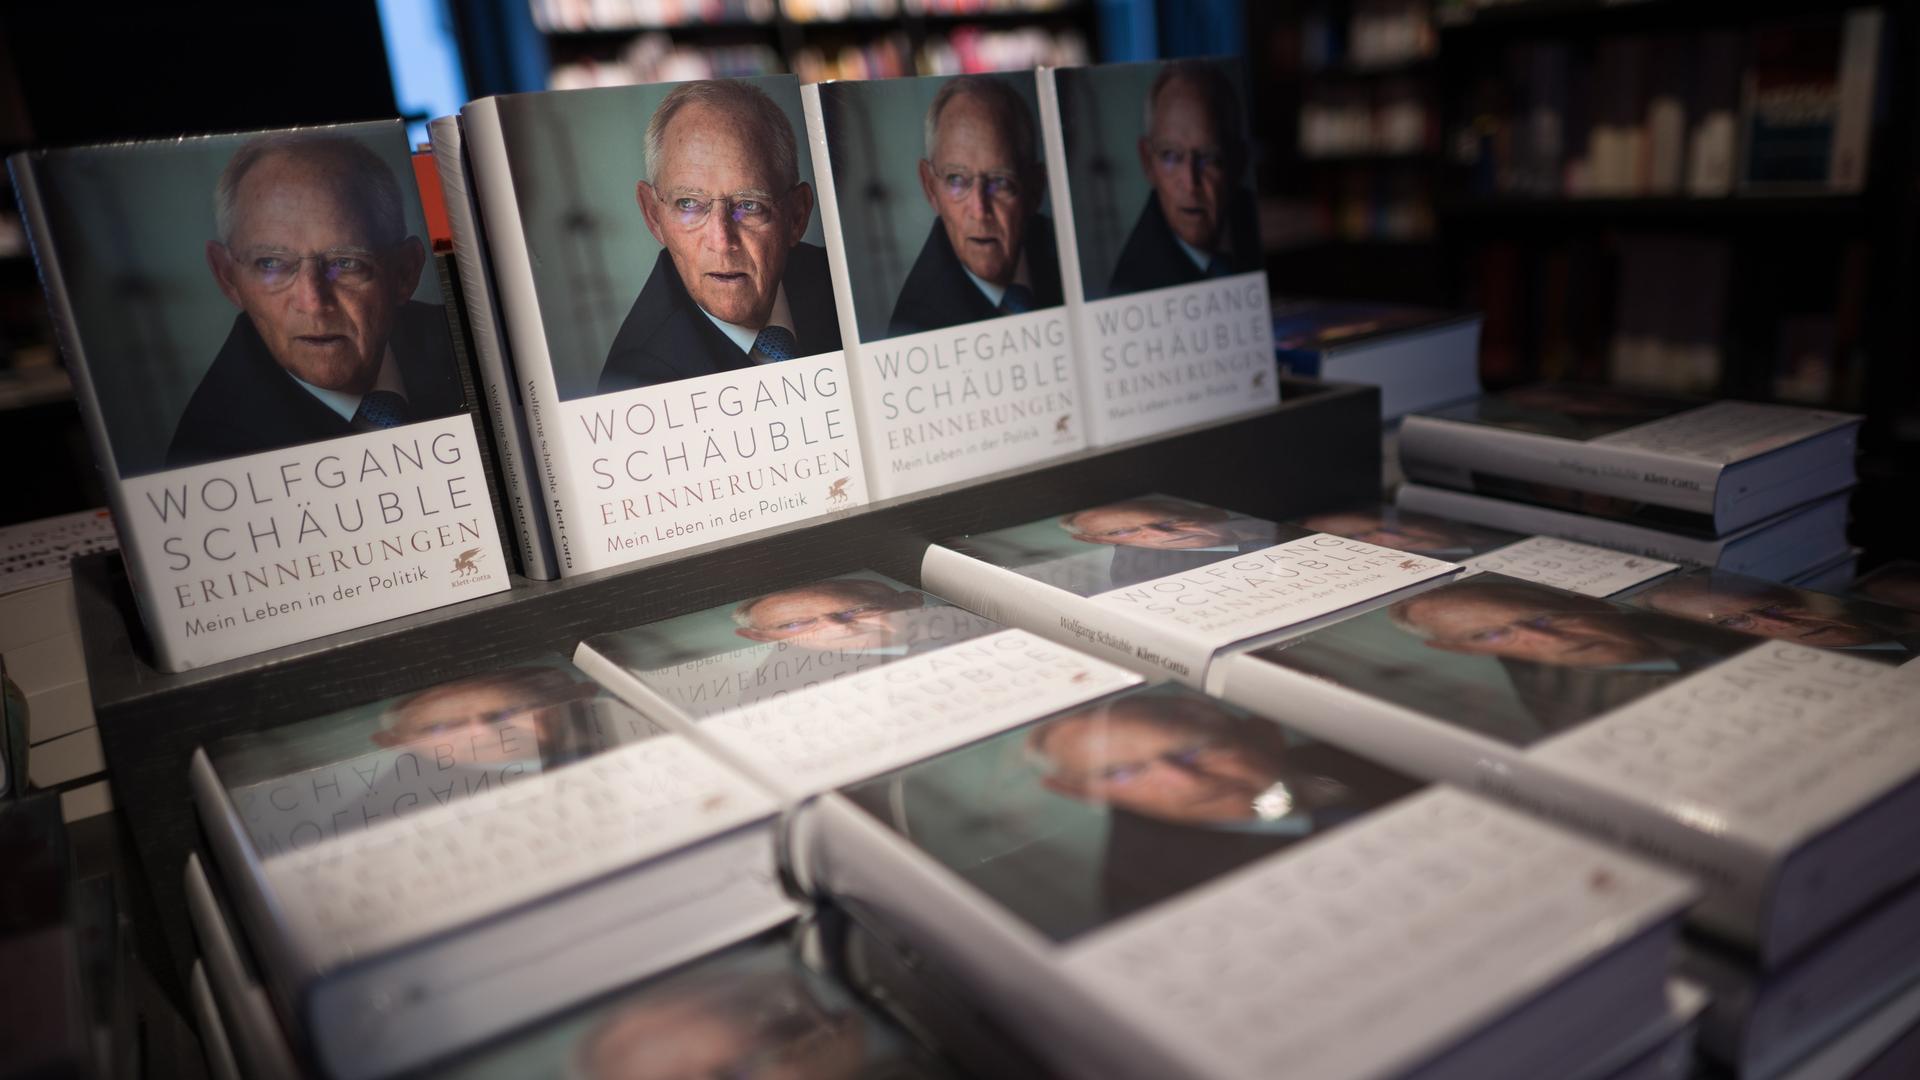 Ausgaben des Buches "Erinnerungen" des verstorbenen Politikers Wolfgang Schäuble stehen in einer Buchhandlung.